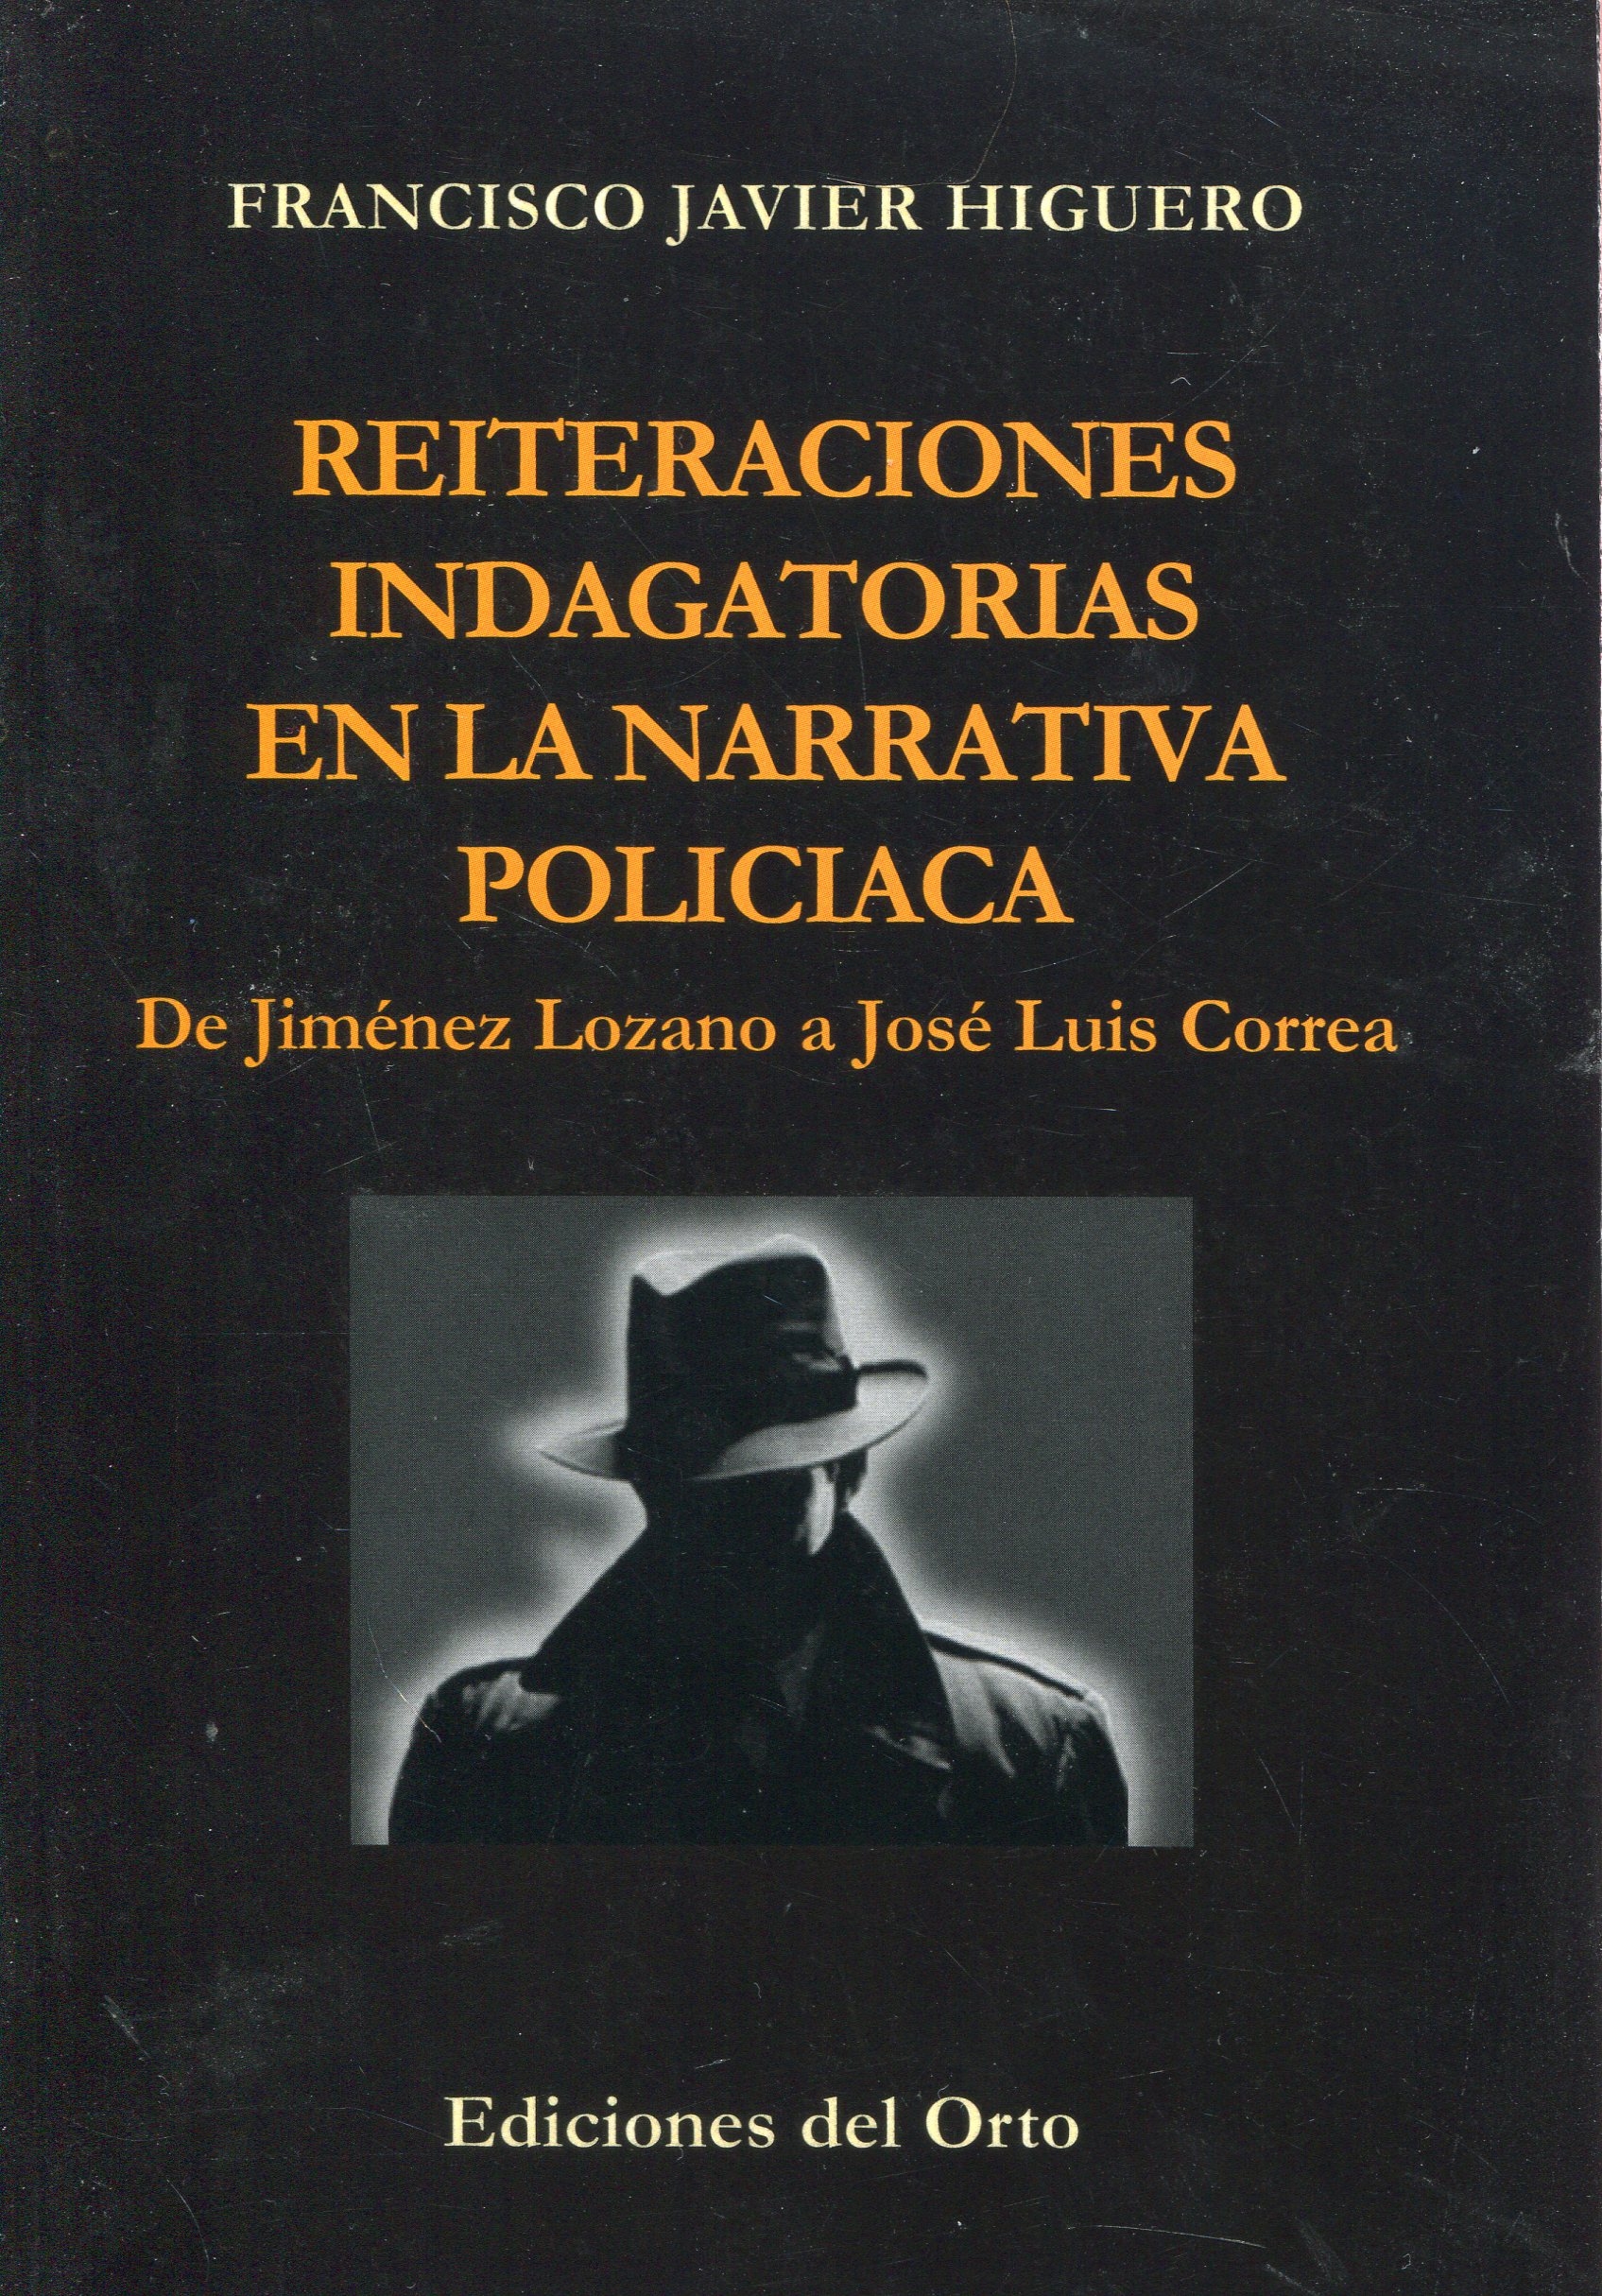 Reiteraciones indagatorias en la narrativa policiaca. 9788479235918